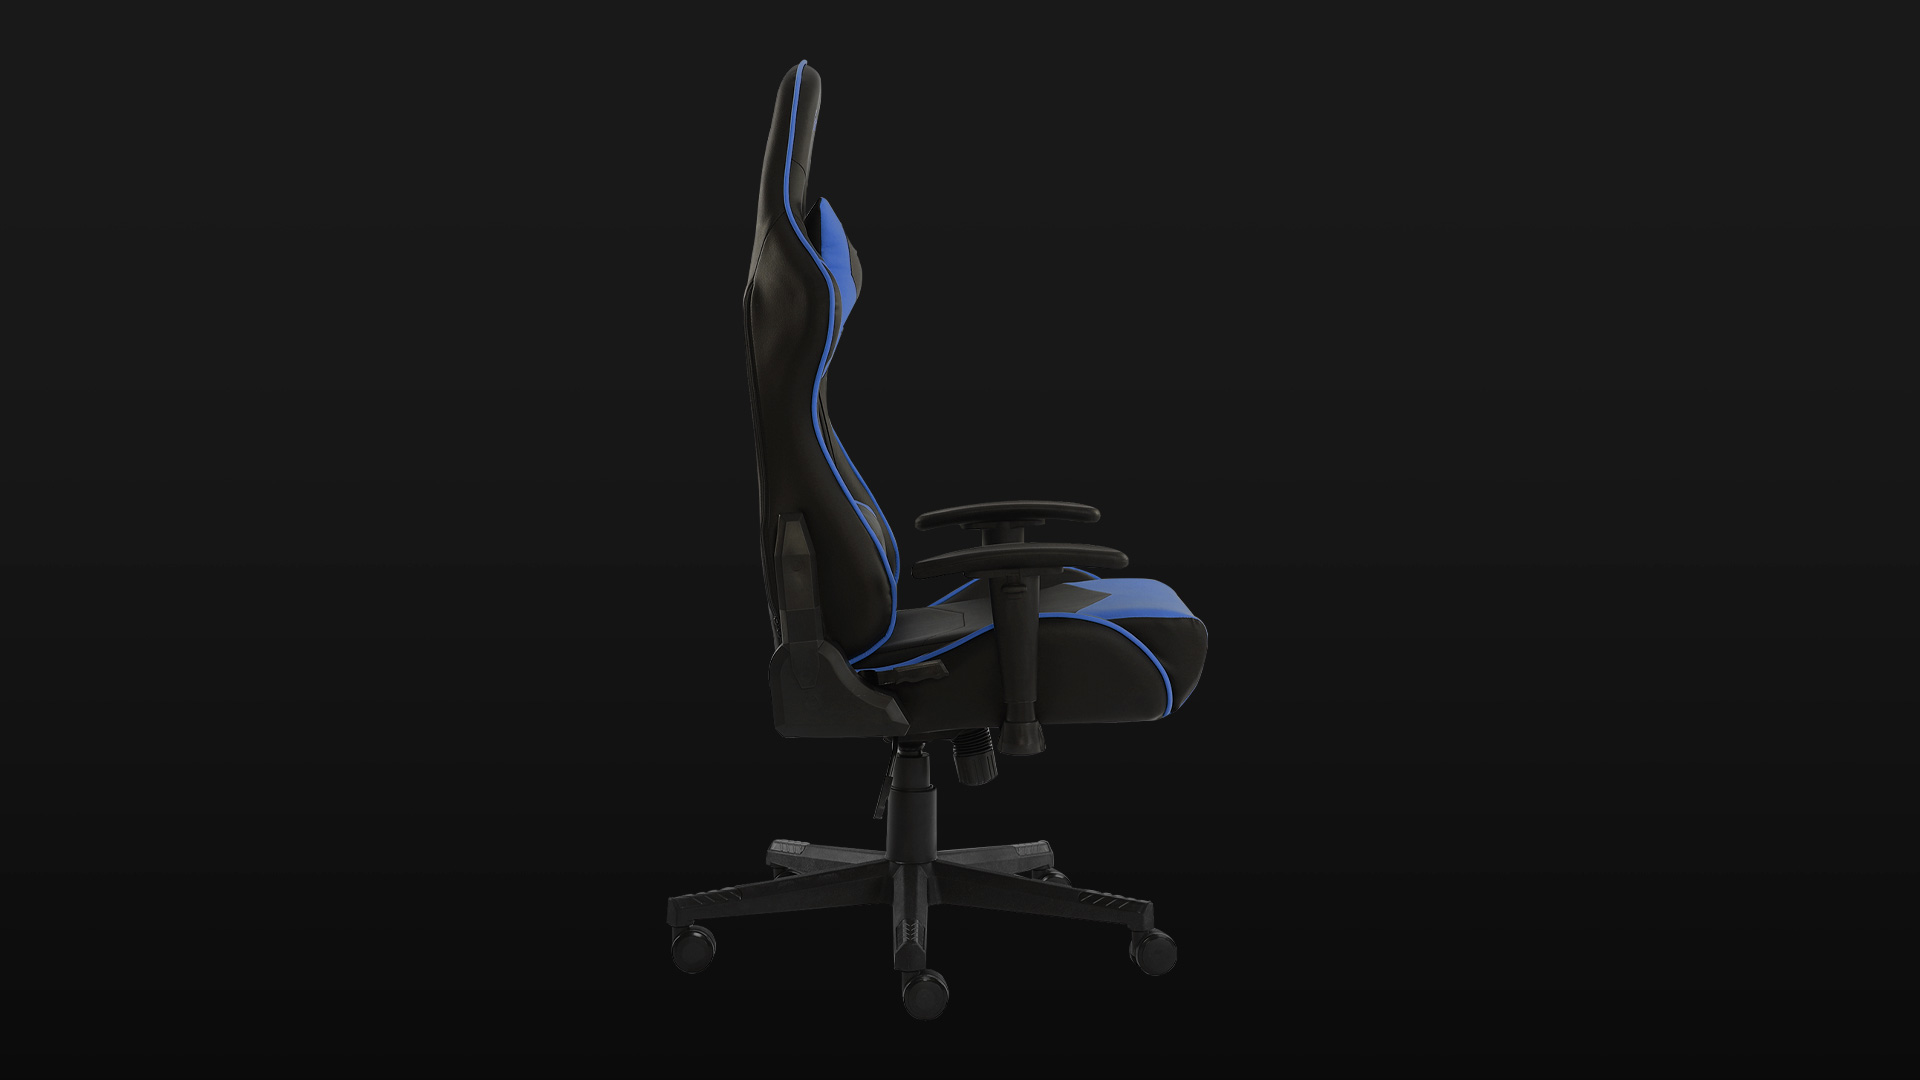 silla gamer azul con negro